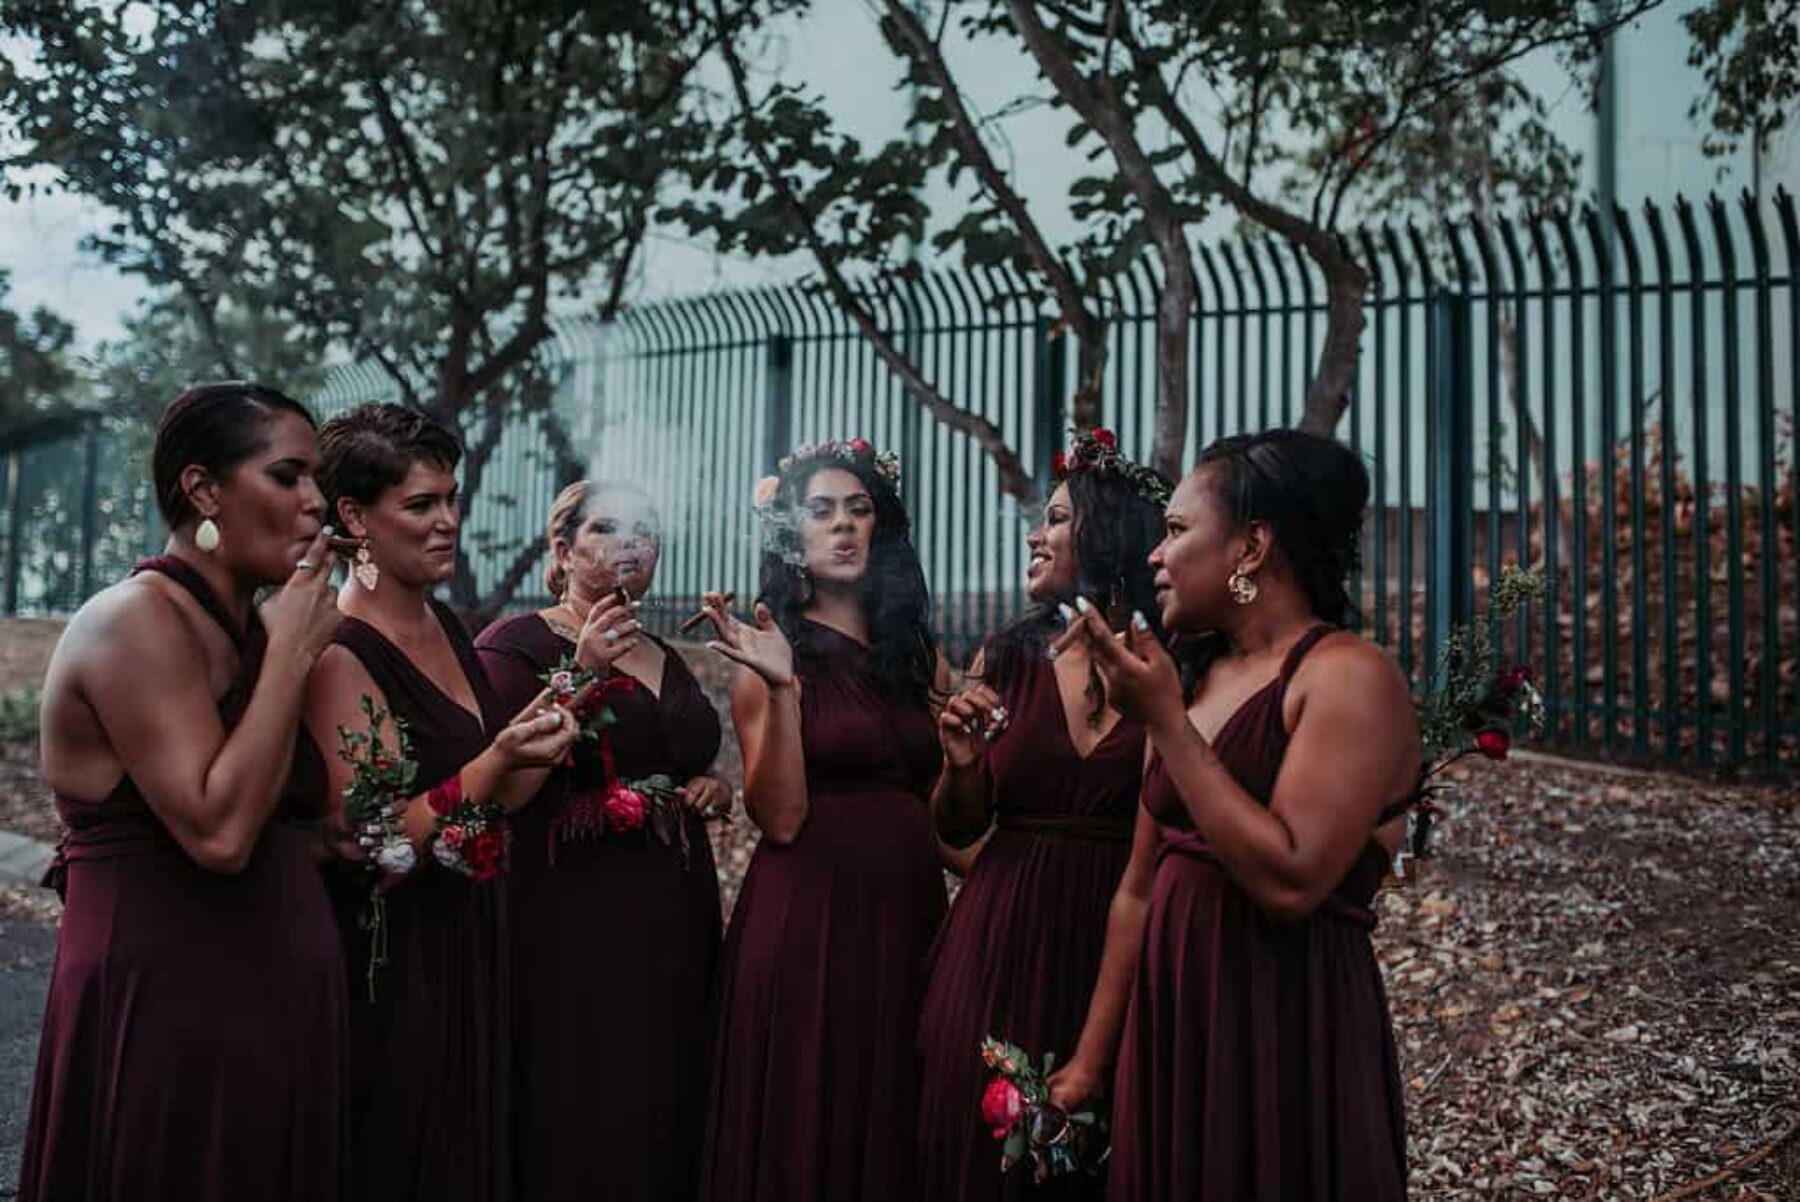 cigar-smoking bridesmaids